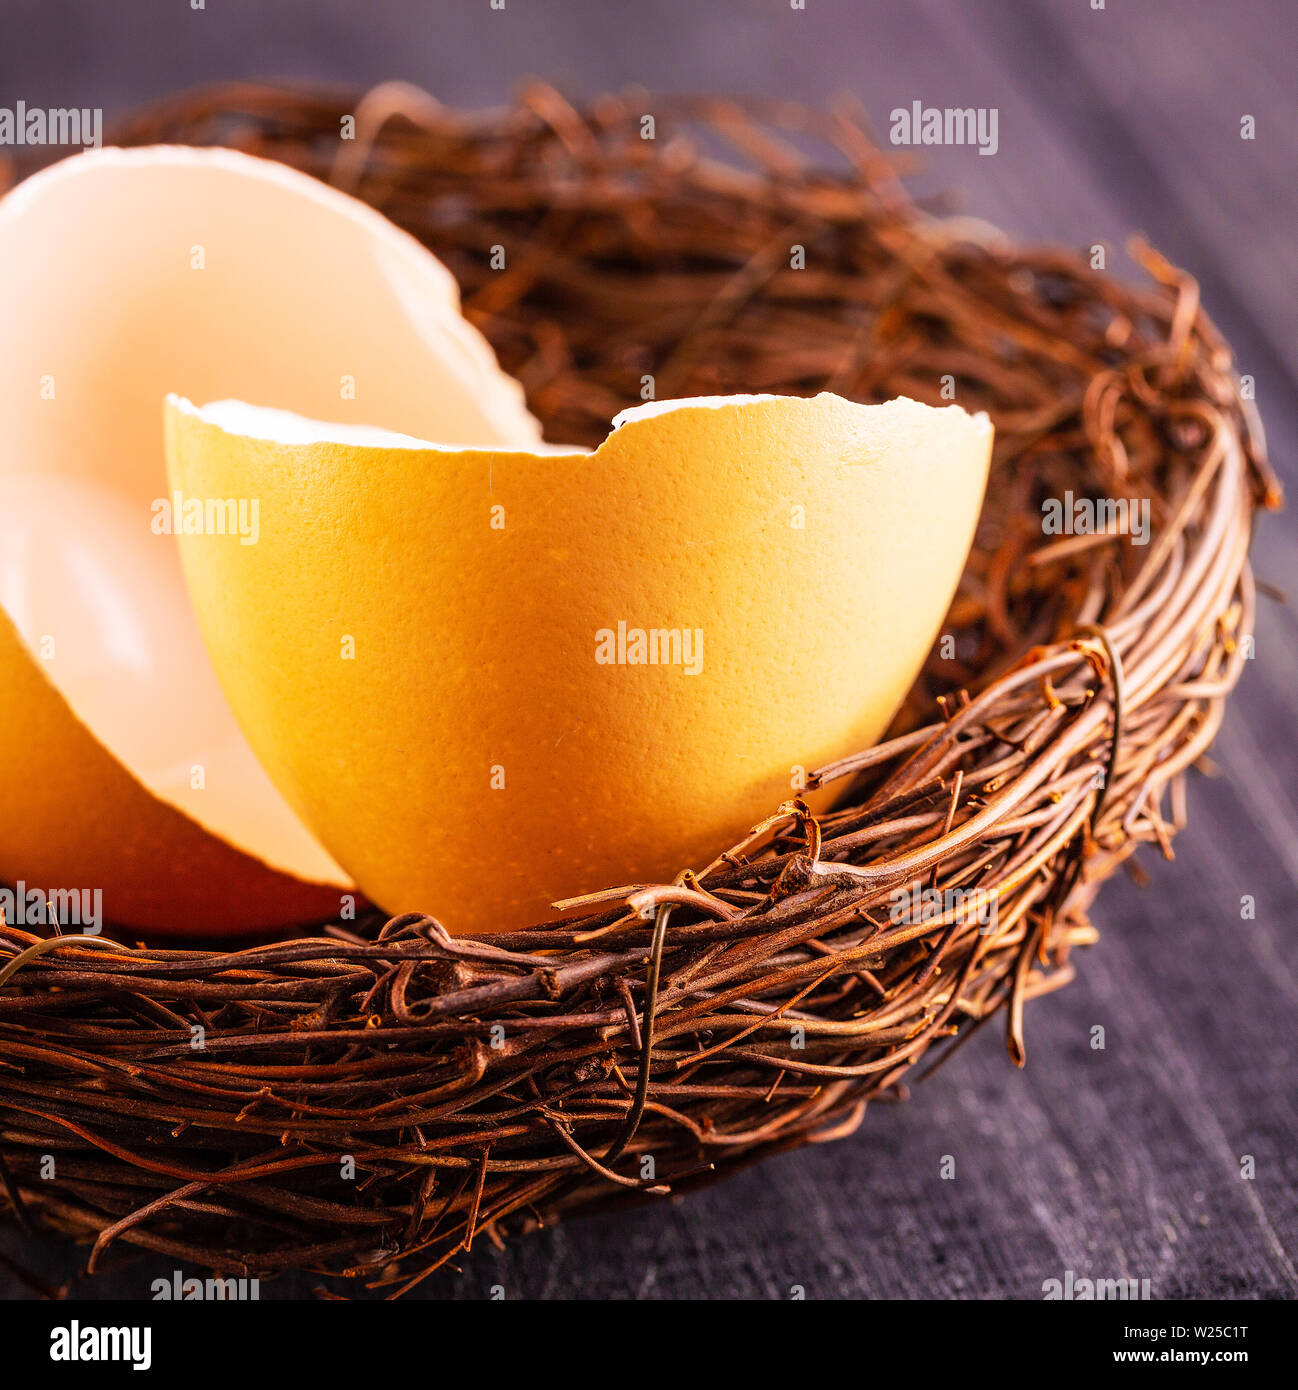 Rotture di gusci delle uova nel nido sul vecchio sfondo di legno. Concetto di finanze, rotture di risparmi personali, la pensione di anzianità o di investimento. Foto Stock